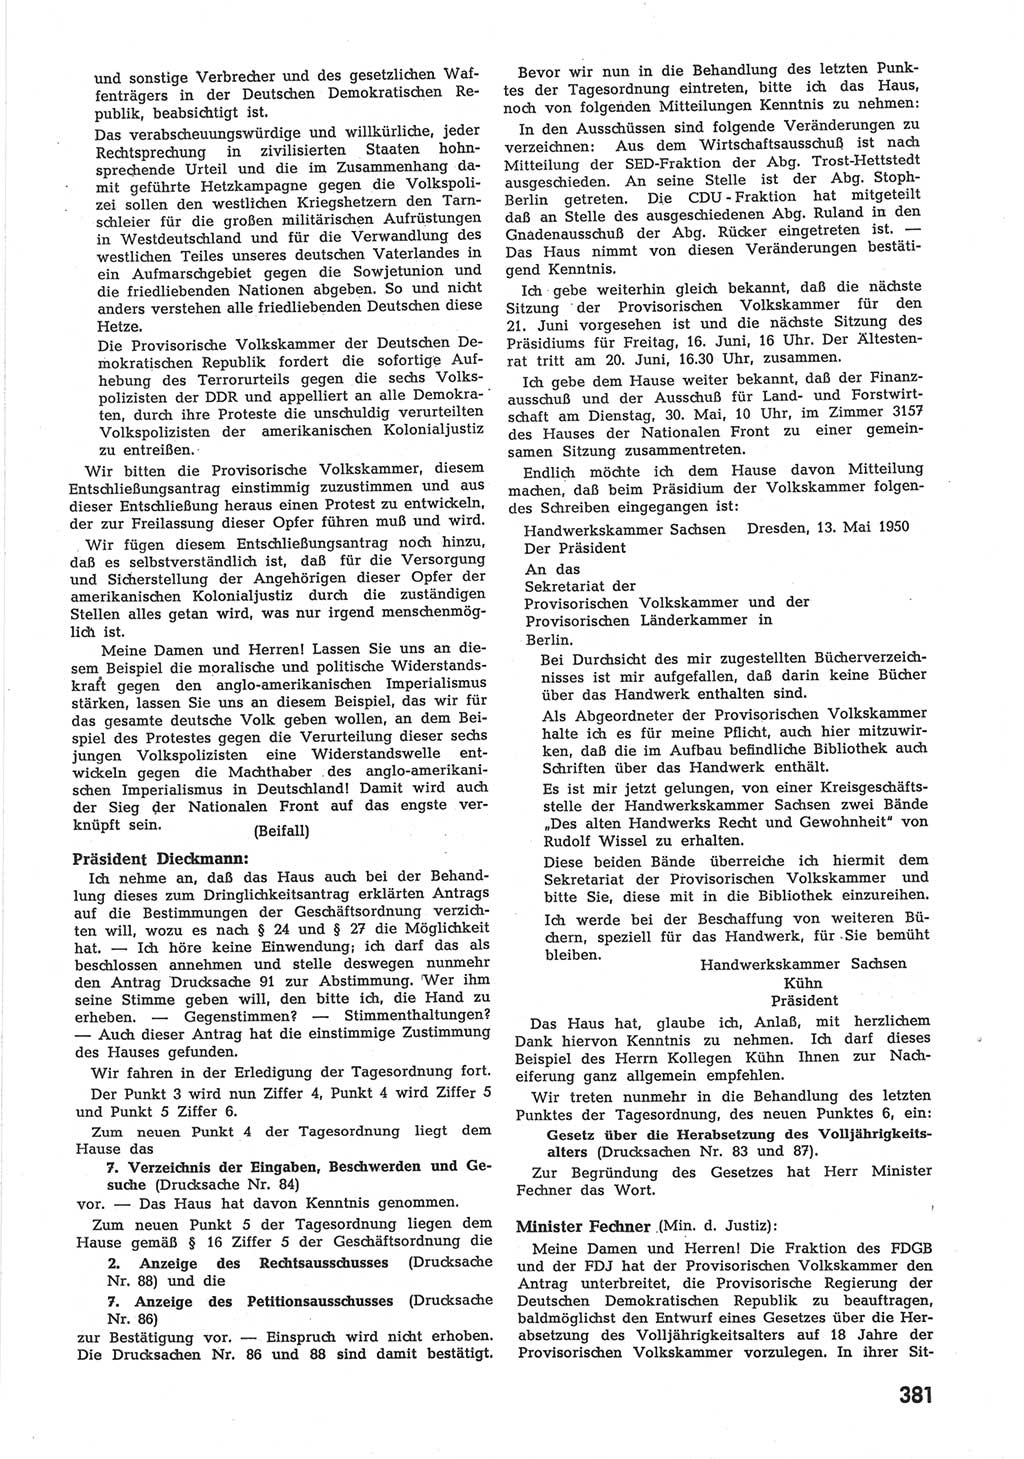 Provisorische Volkskammer (VK) der Deutschen Demokratischen Republik (DDR) 1949-1950, Dokument 399 (Prov. VK DDR 1949-1950, Dok. 399)